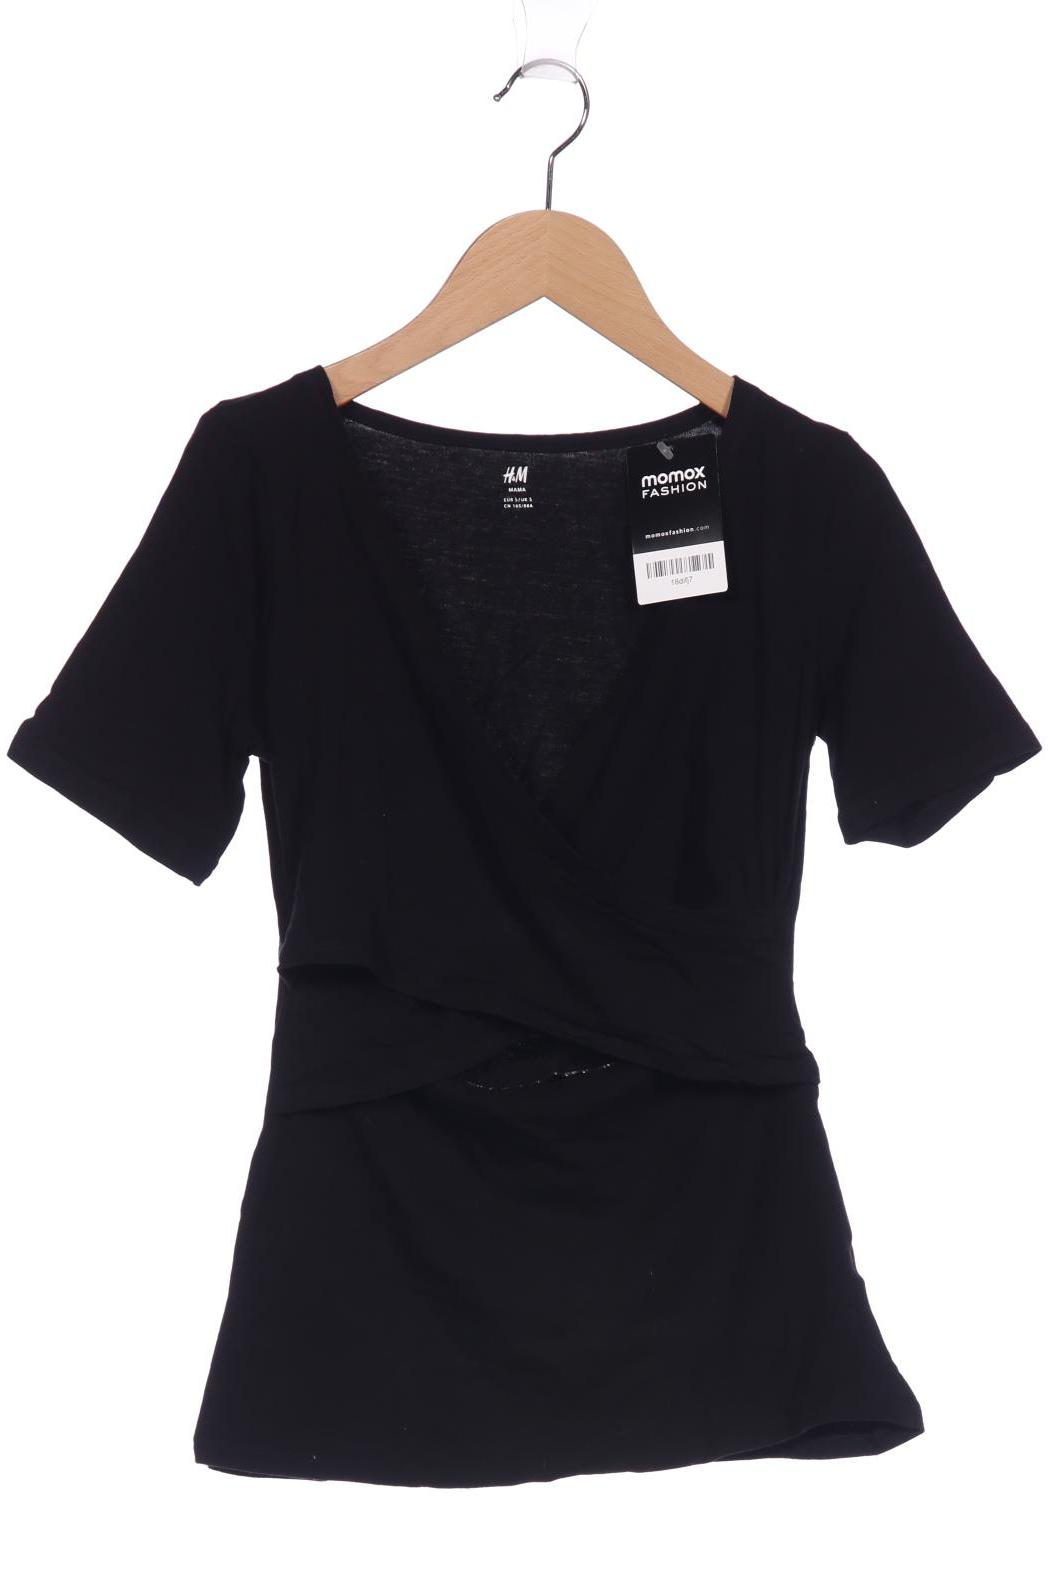 H&M Mama Damen T-Shirt, schwarz von H&M Mama